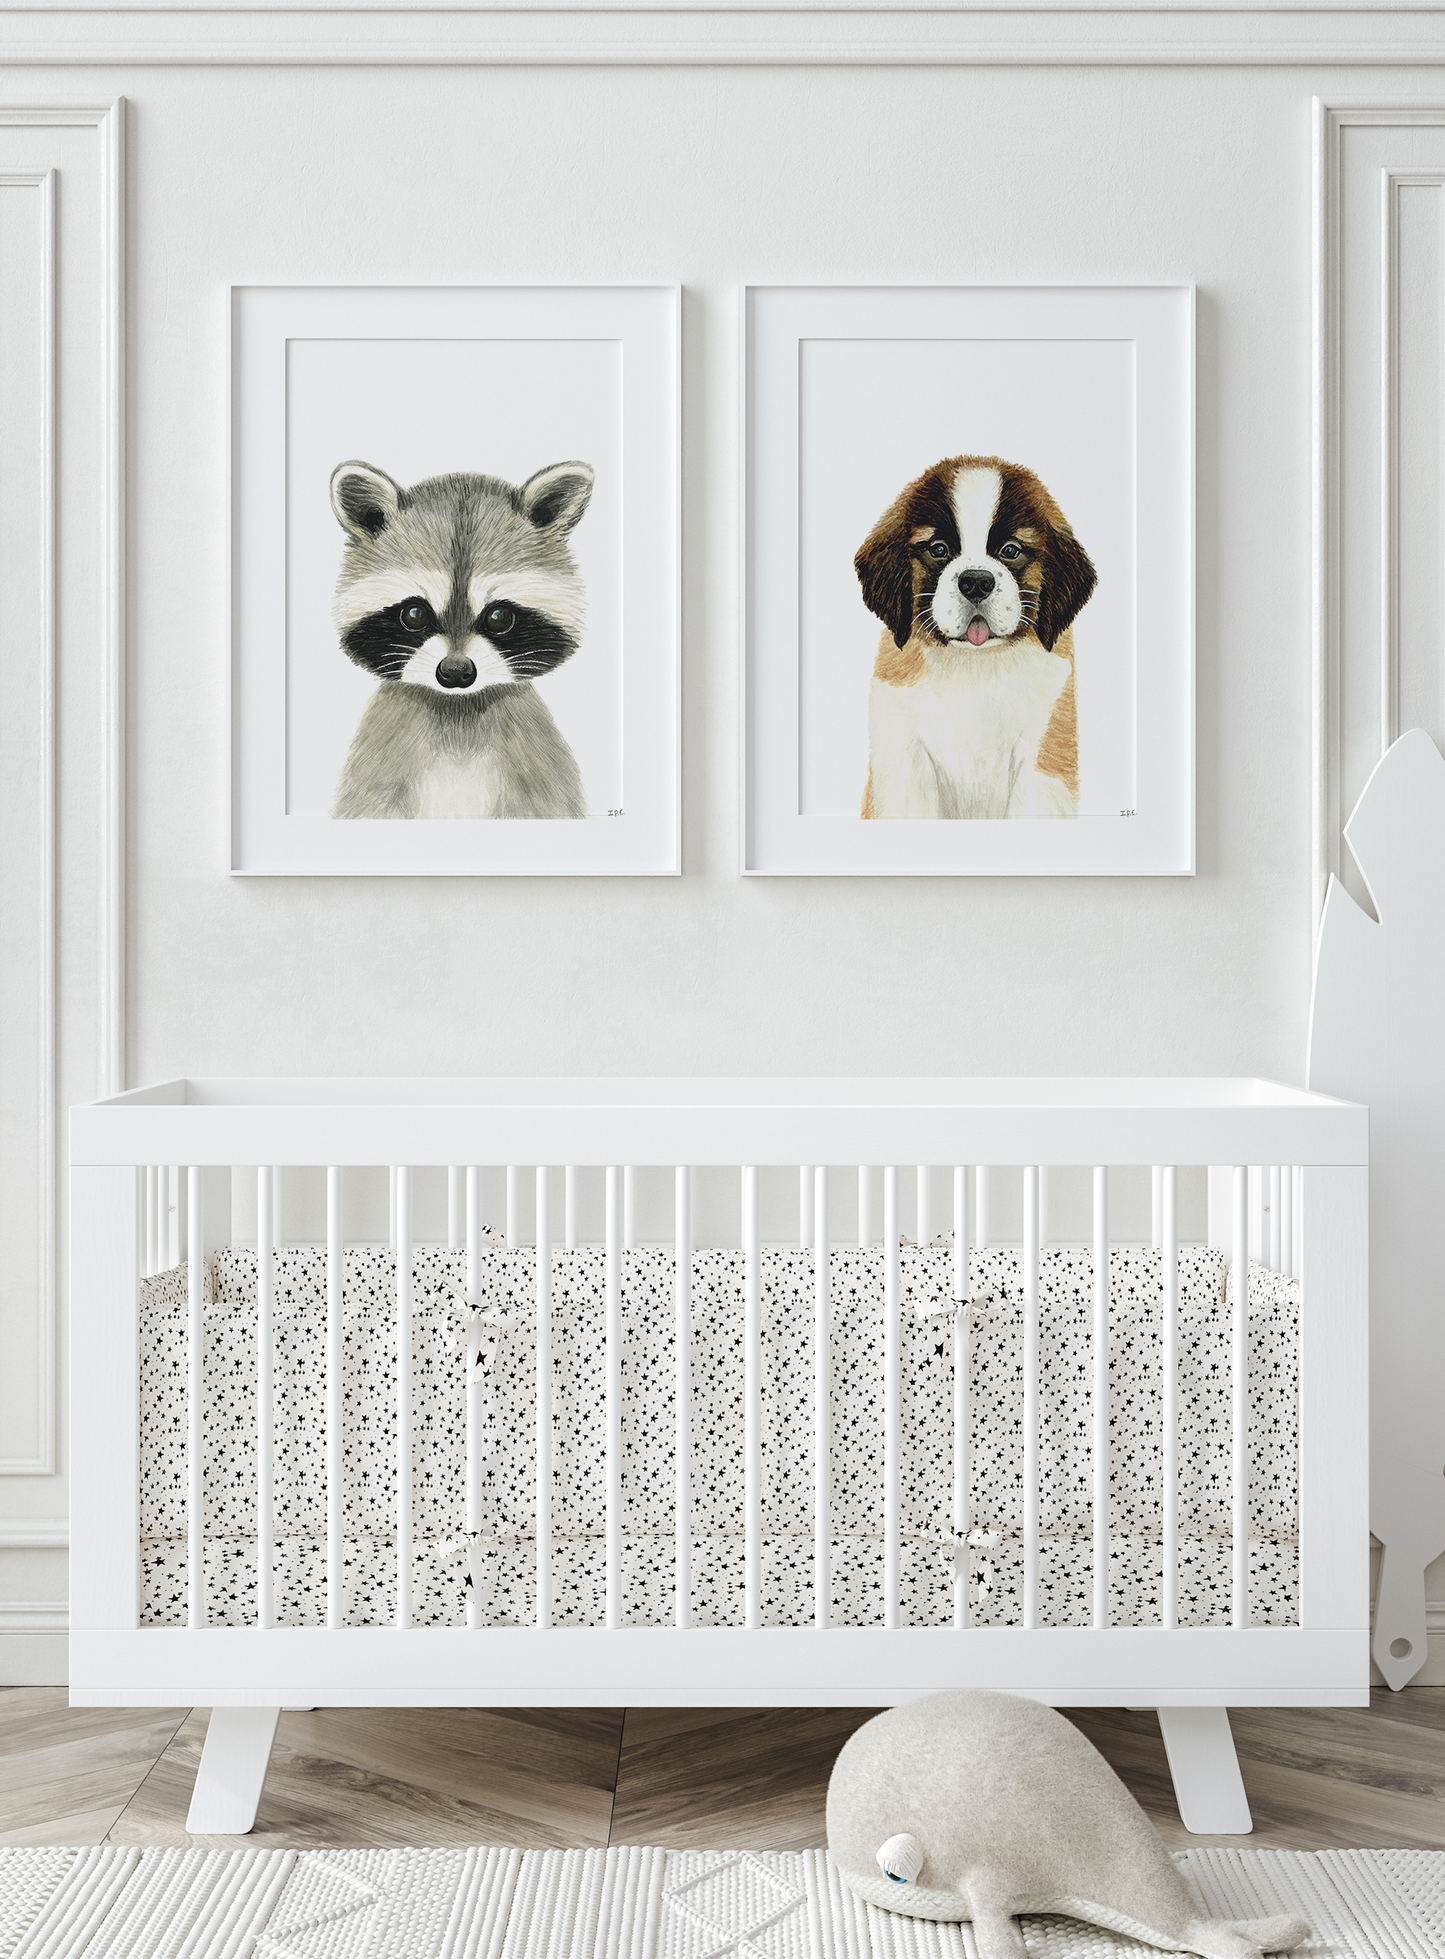 Set of 2 nursery animal print above baby crib: racoon and saint bernard dog